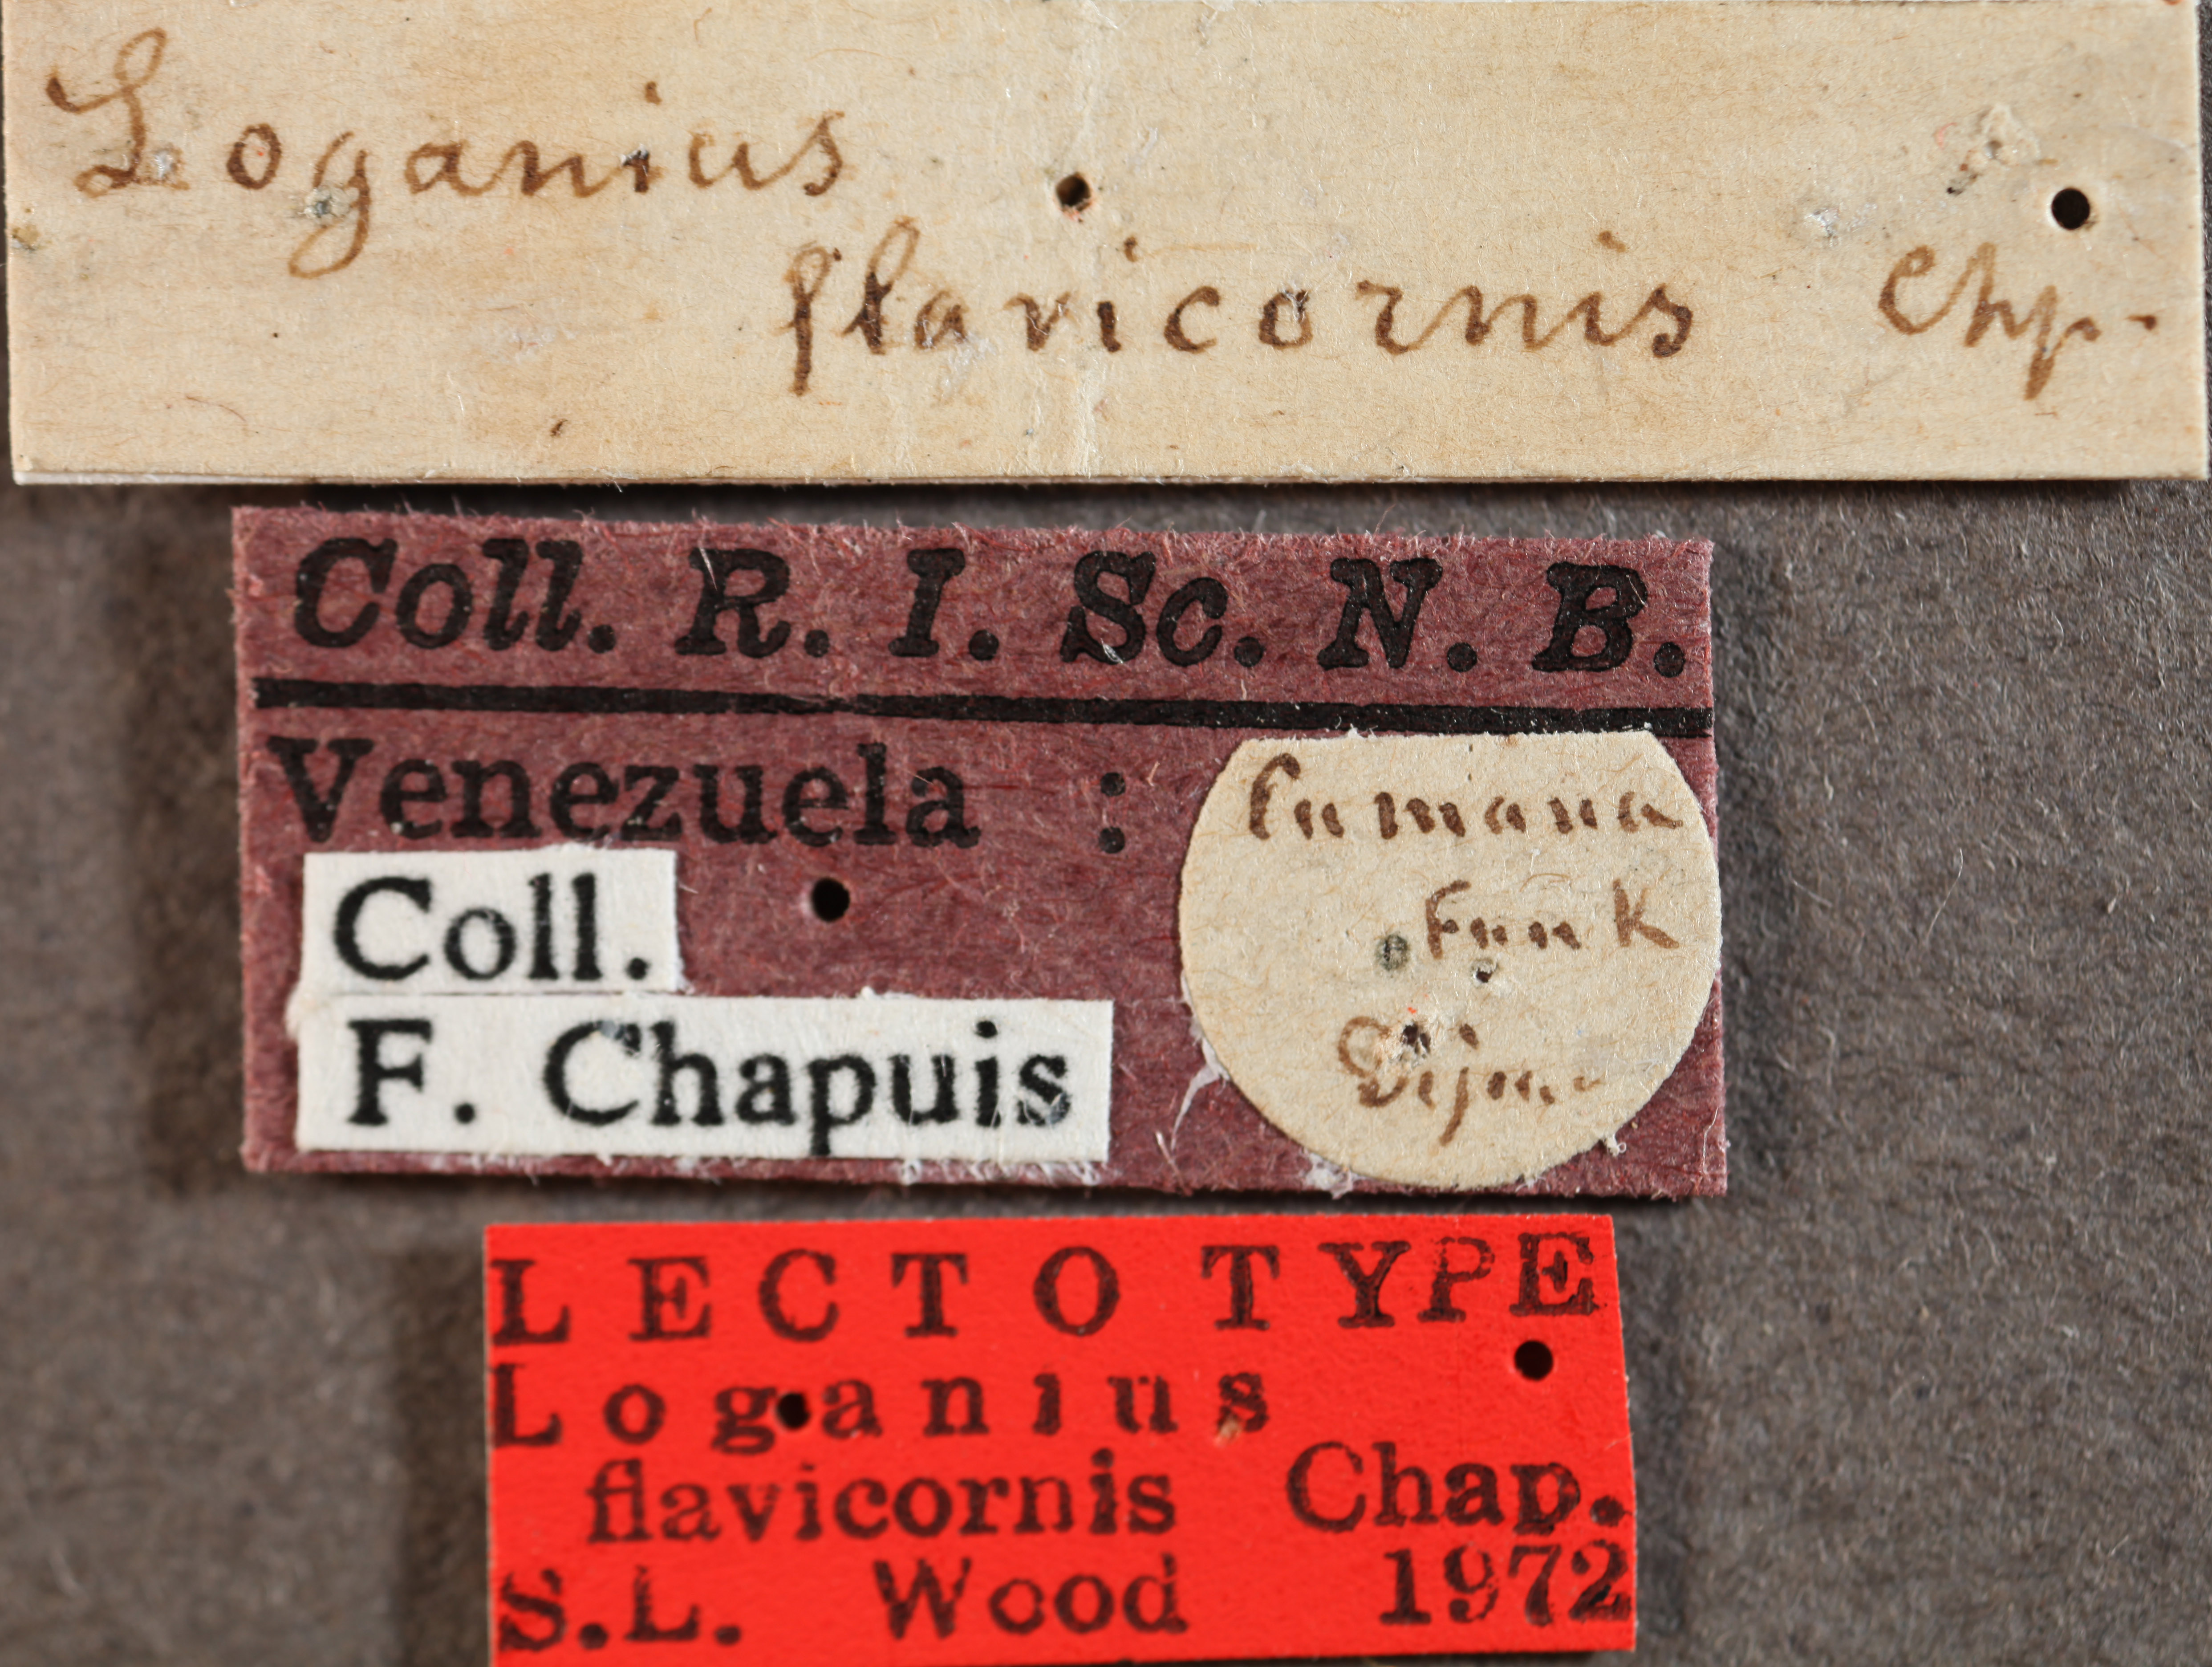 Loganius flavicornis labels.jpg